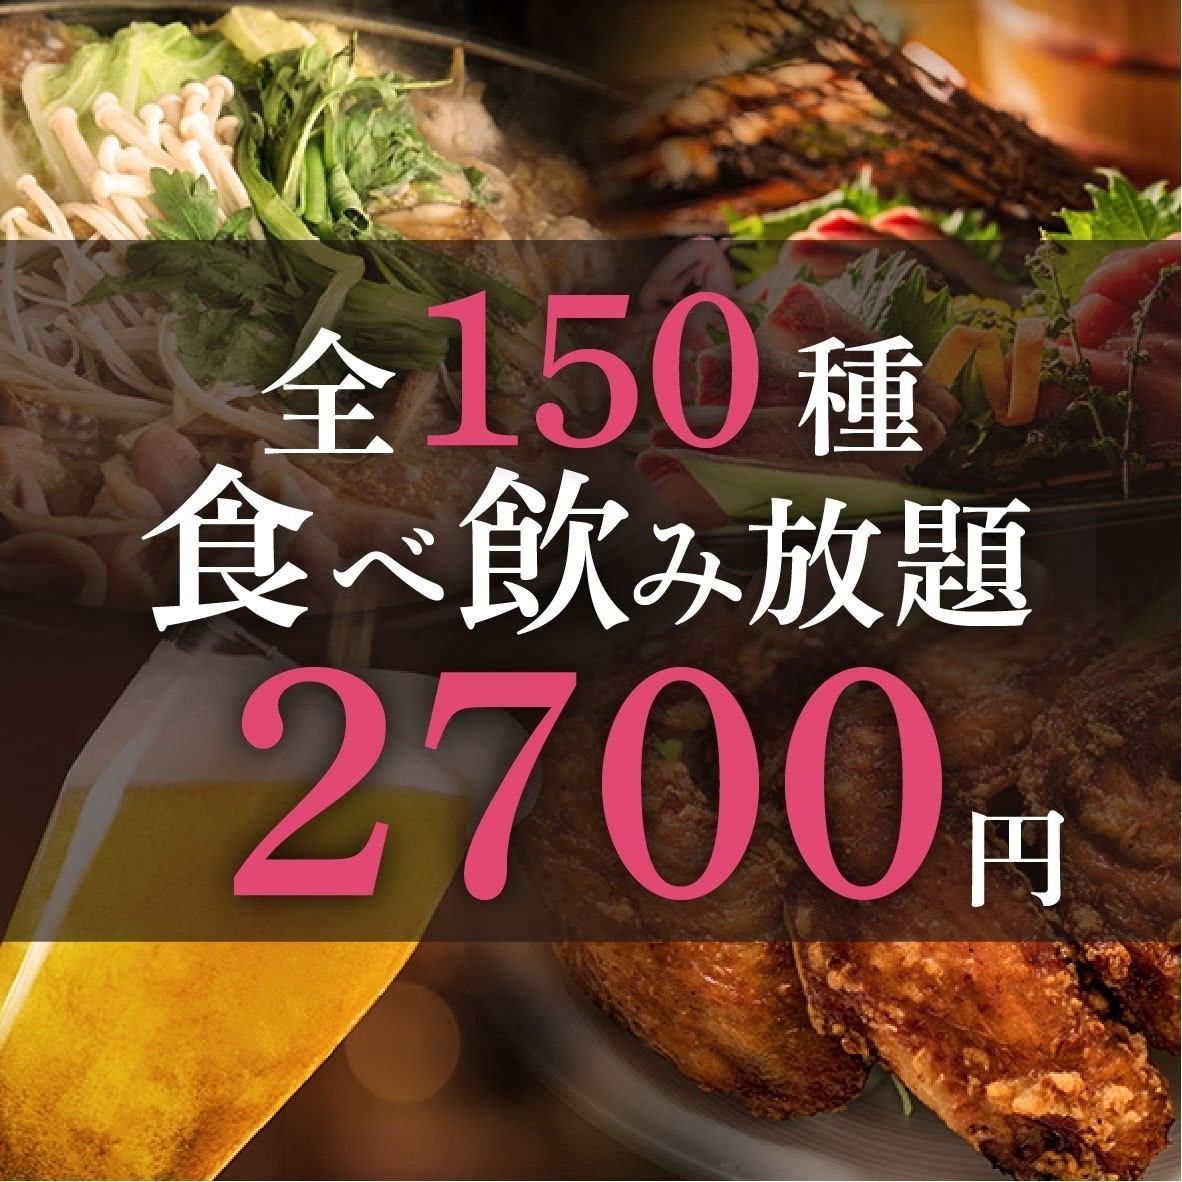 2,700日圓起的無限量吃喝套餐♪非常適合接送聚會或酒會！